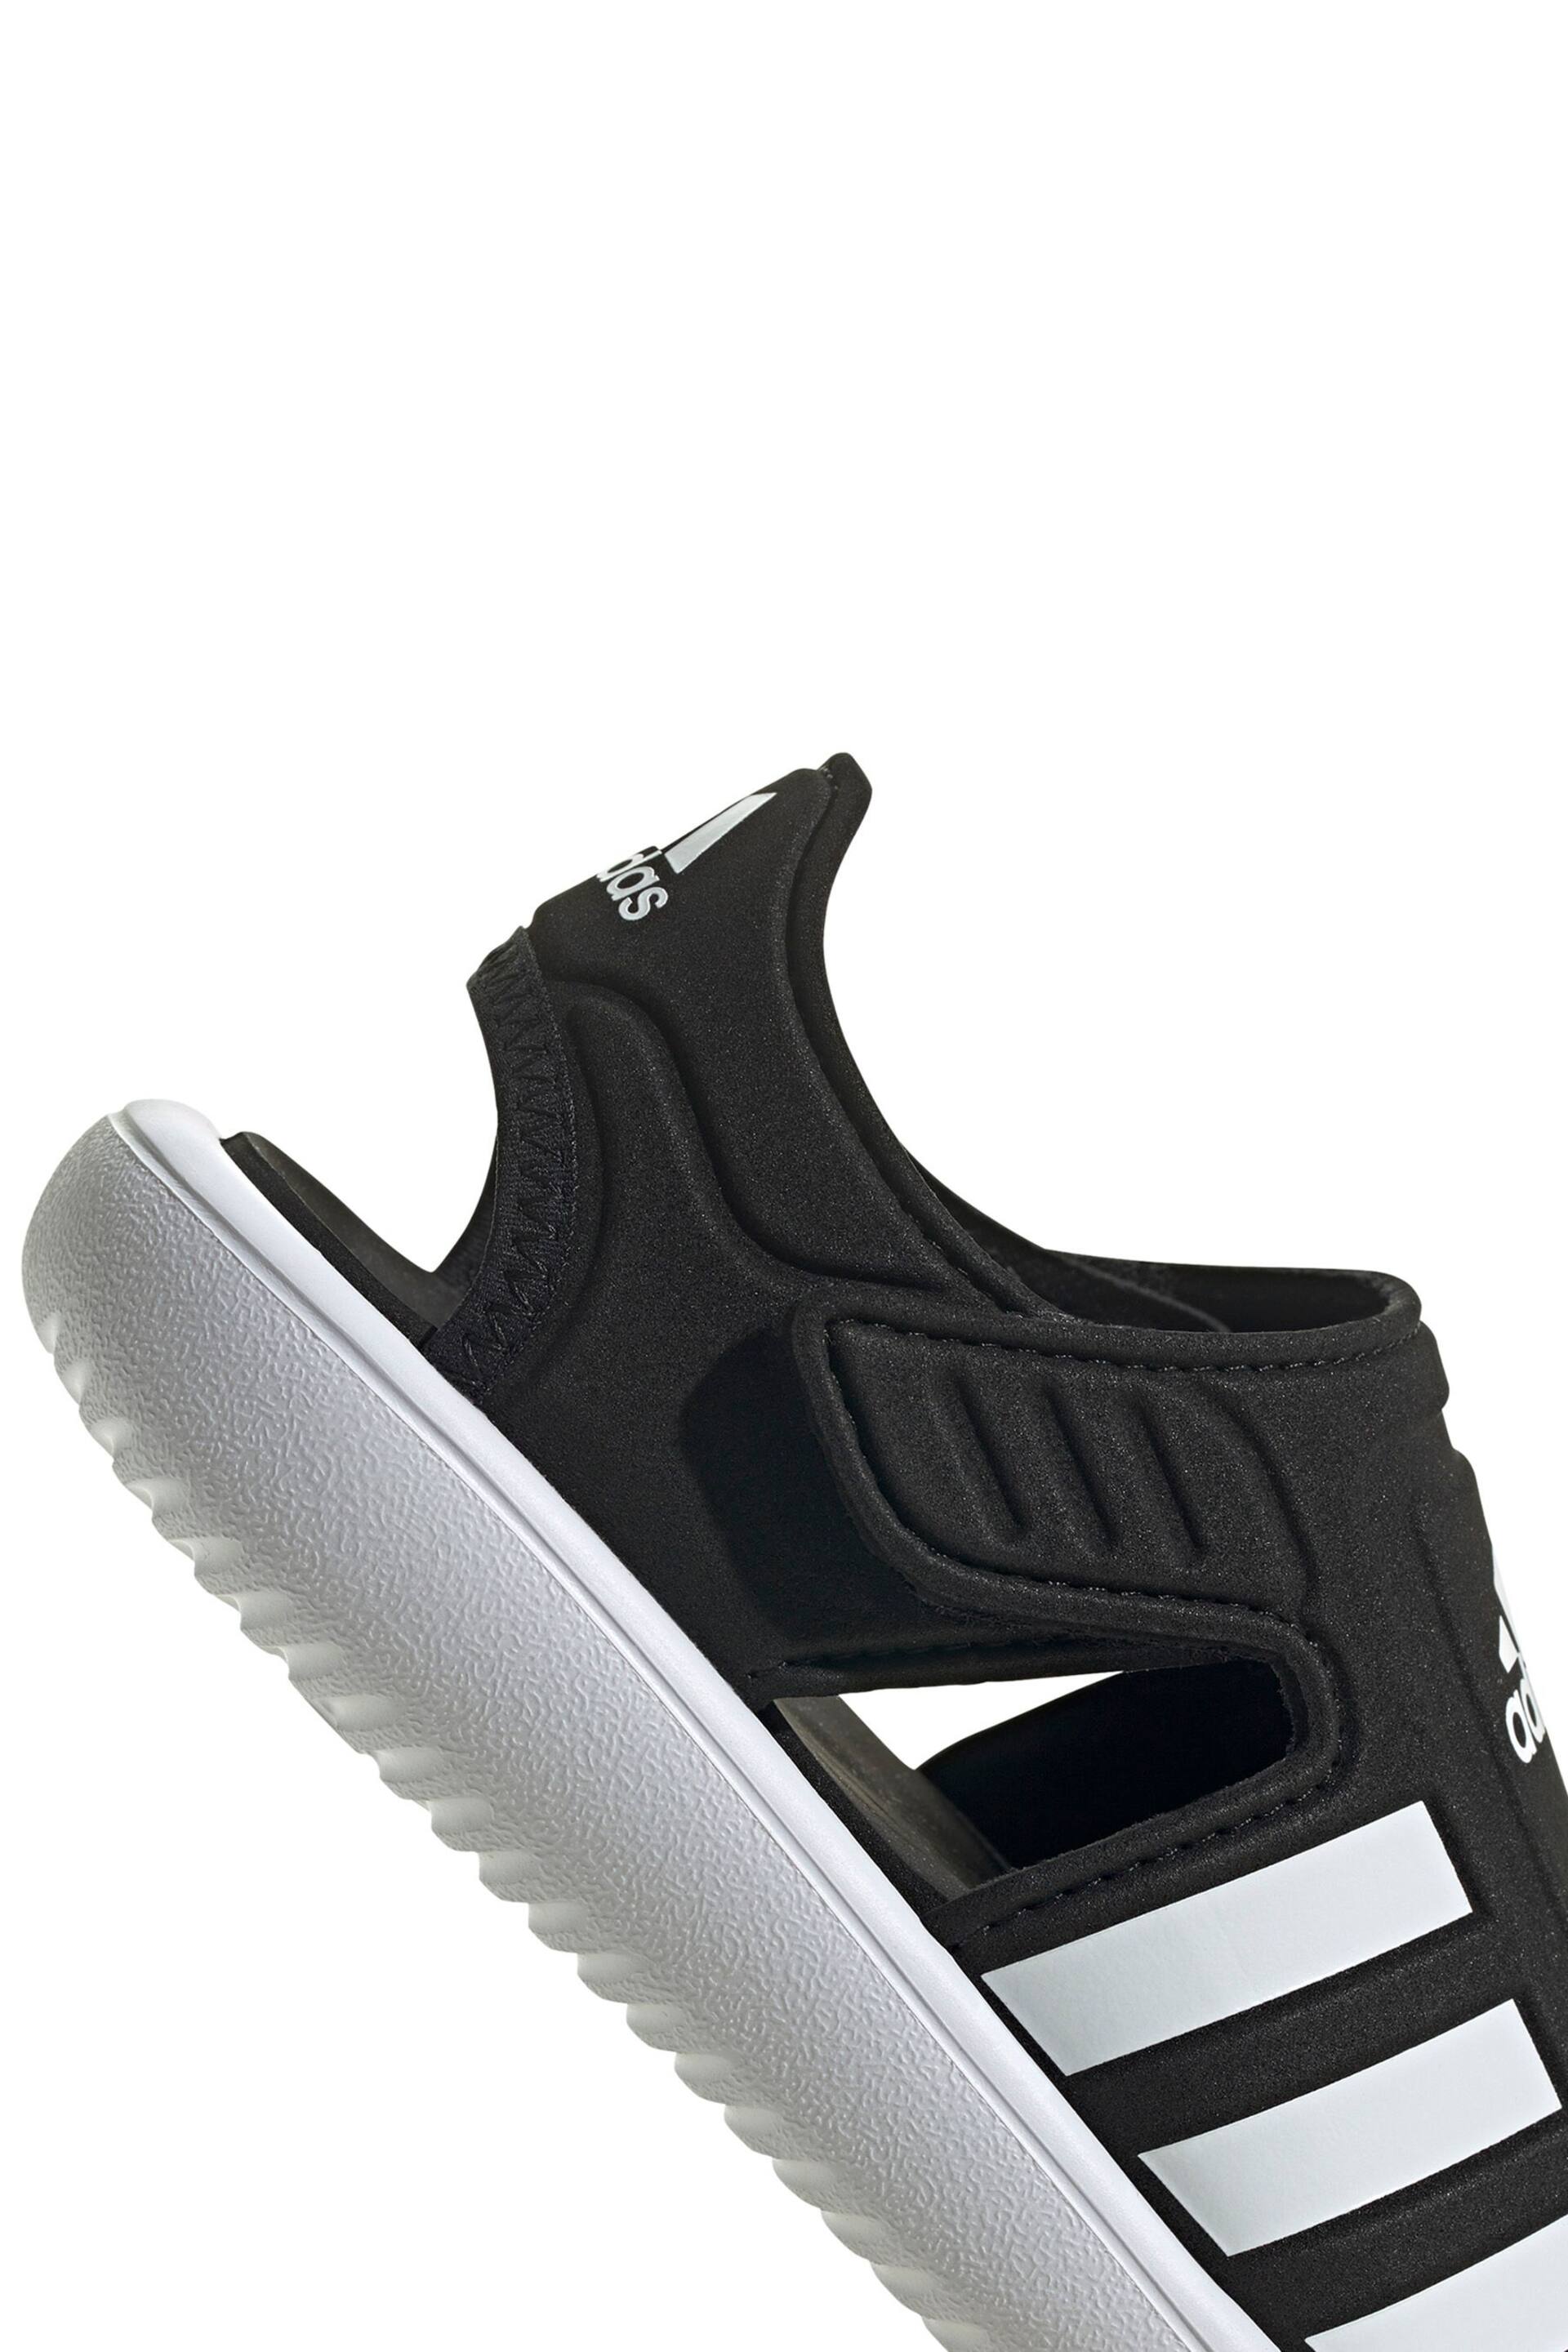 adidas Black Adilette Junior Sandals - Image 8 of 8